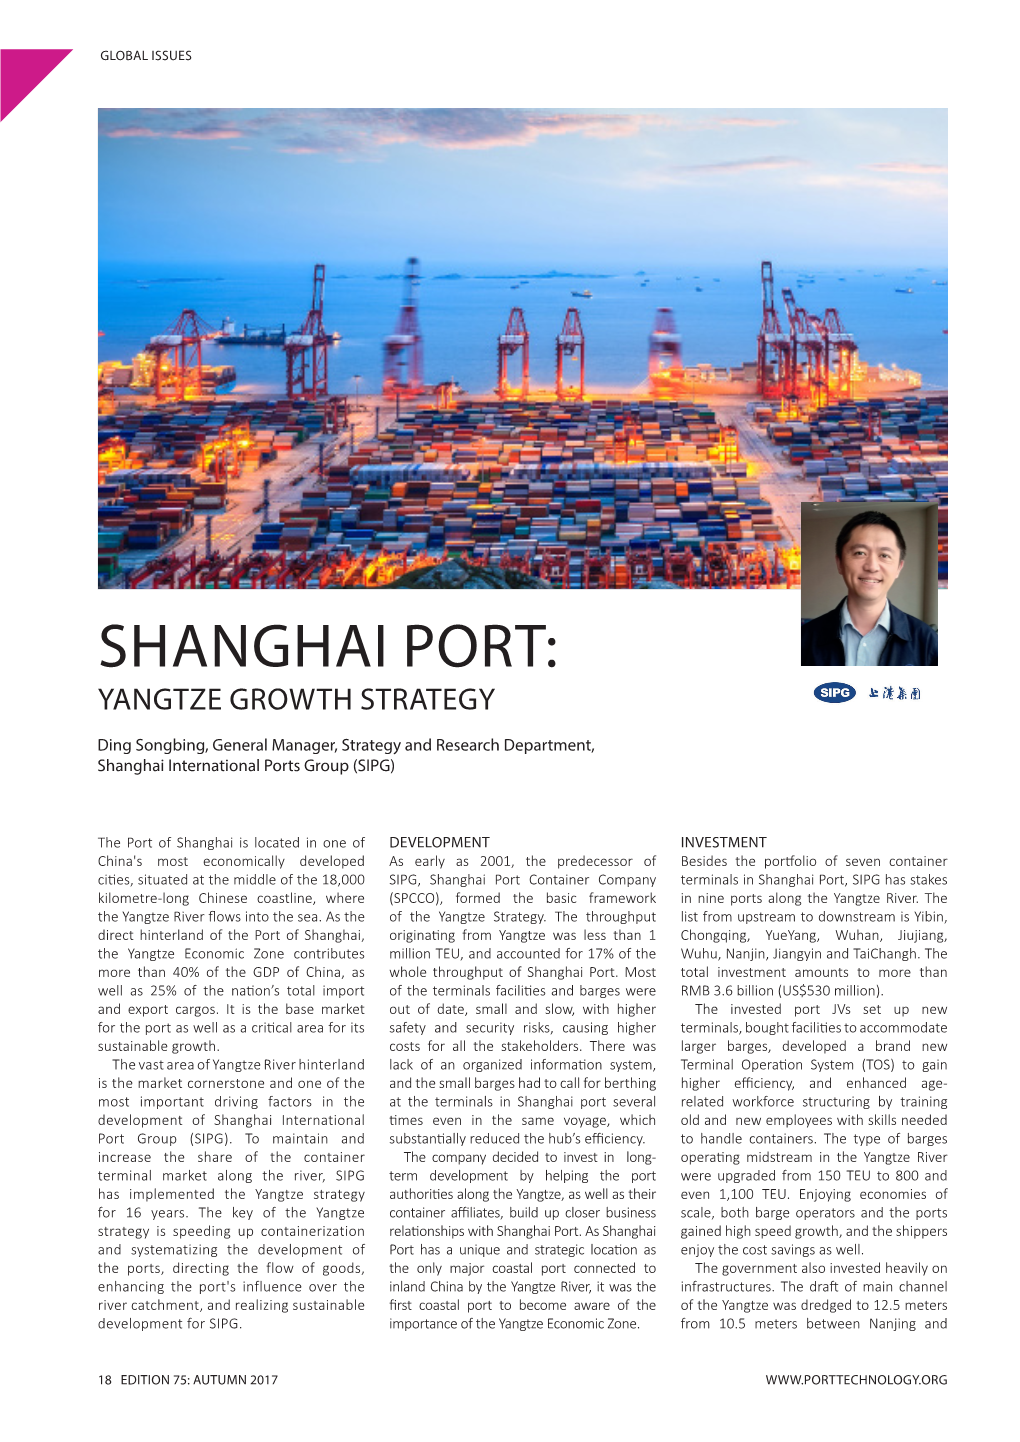 Shanghai Port: Yangtze Growth Strategy